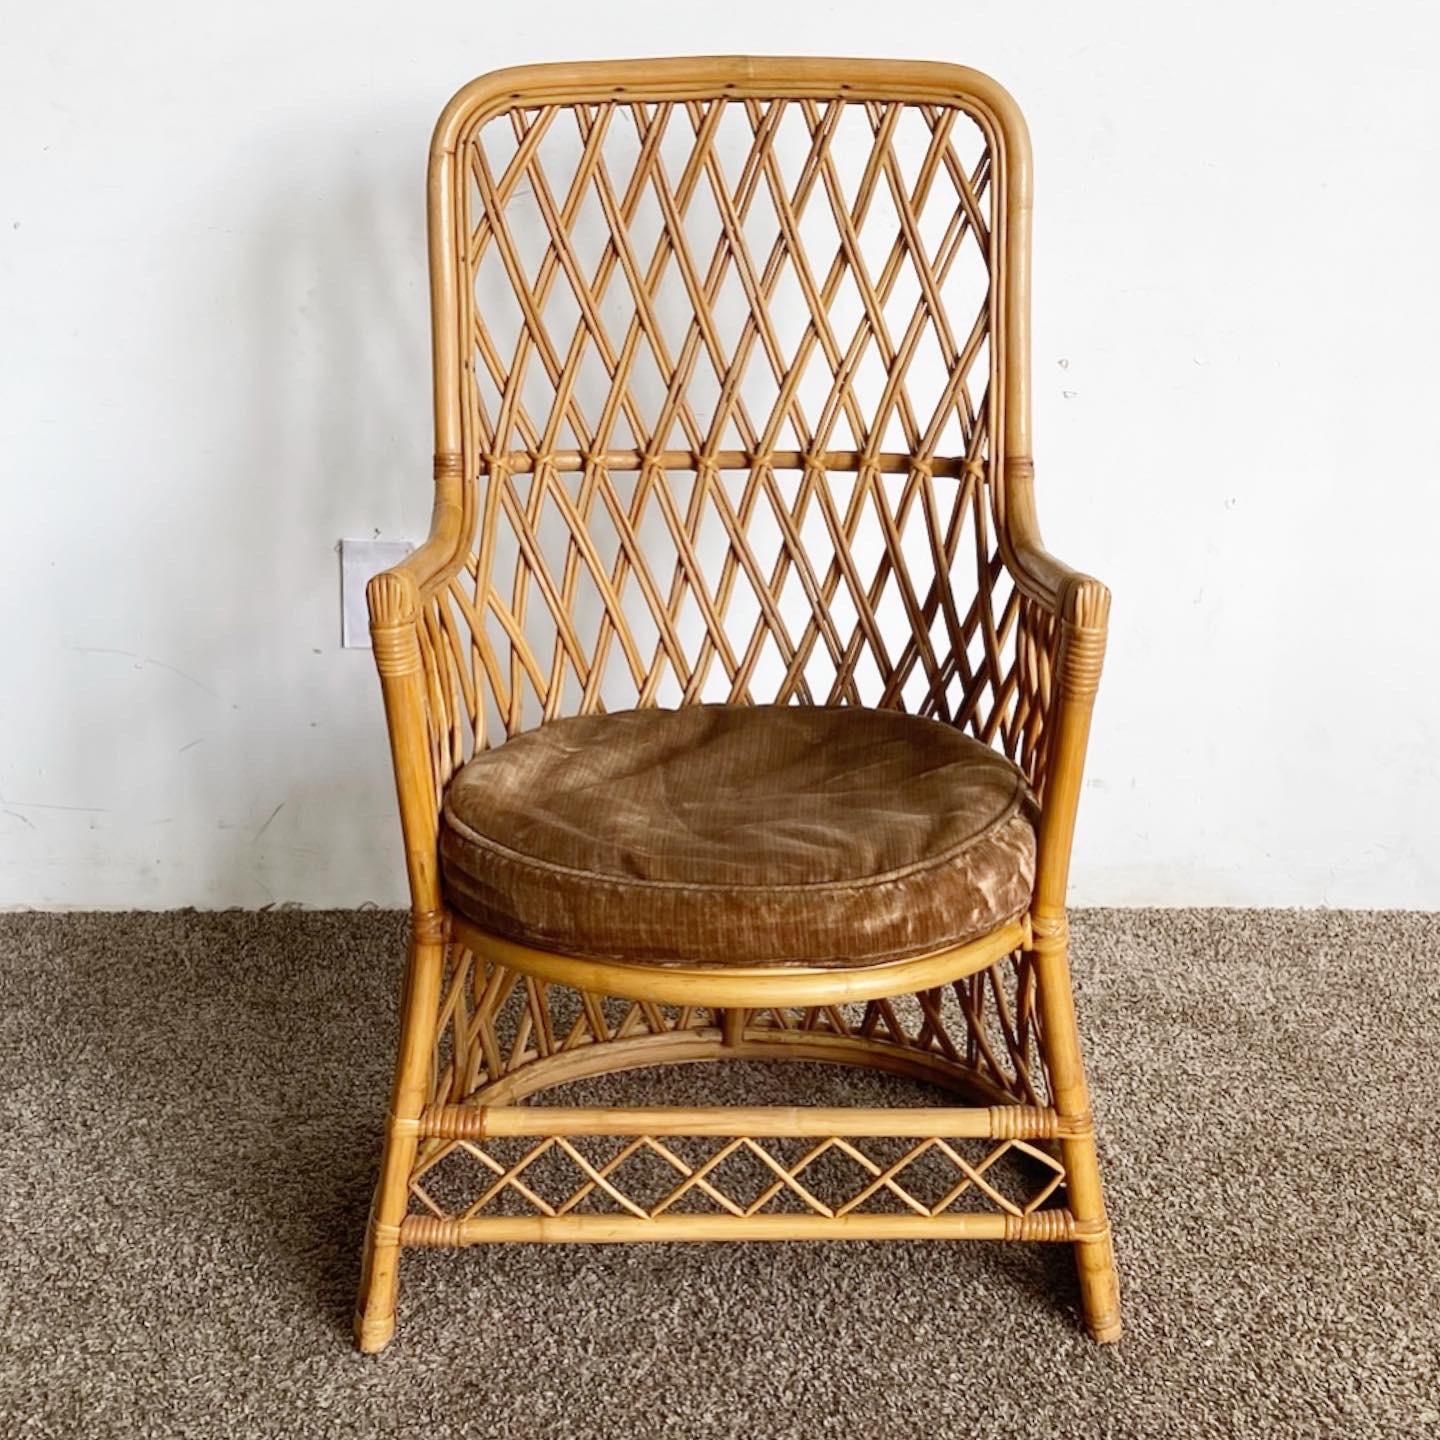 Wir präsentieren unseren Boho Chic Bamboo Rattan Side Chair, eine Verschmelzung von Bohème-Ästhetik und natürlichen Texturen. Dieser stilvolle Stuhl aus Bambus und Rattan verfügt über ein bequemes, rundes, braunes Sitzkissen und ein einzigartiges